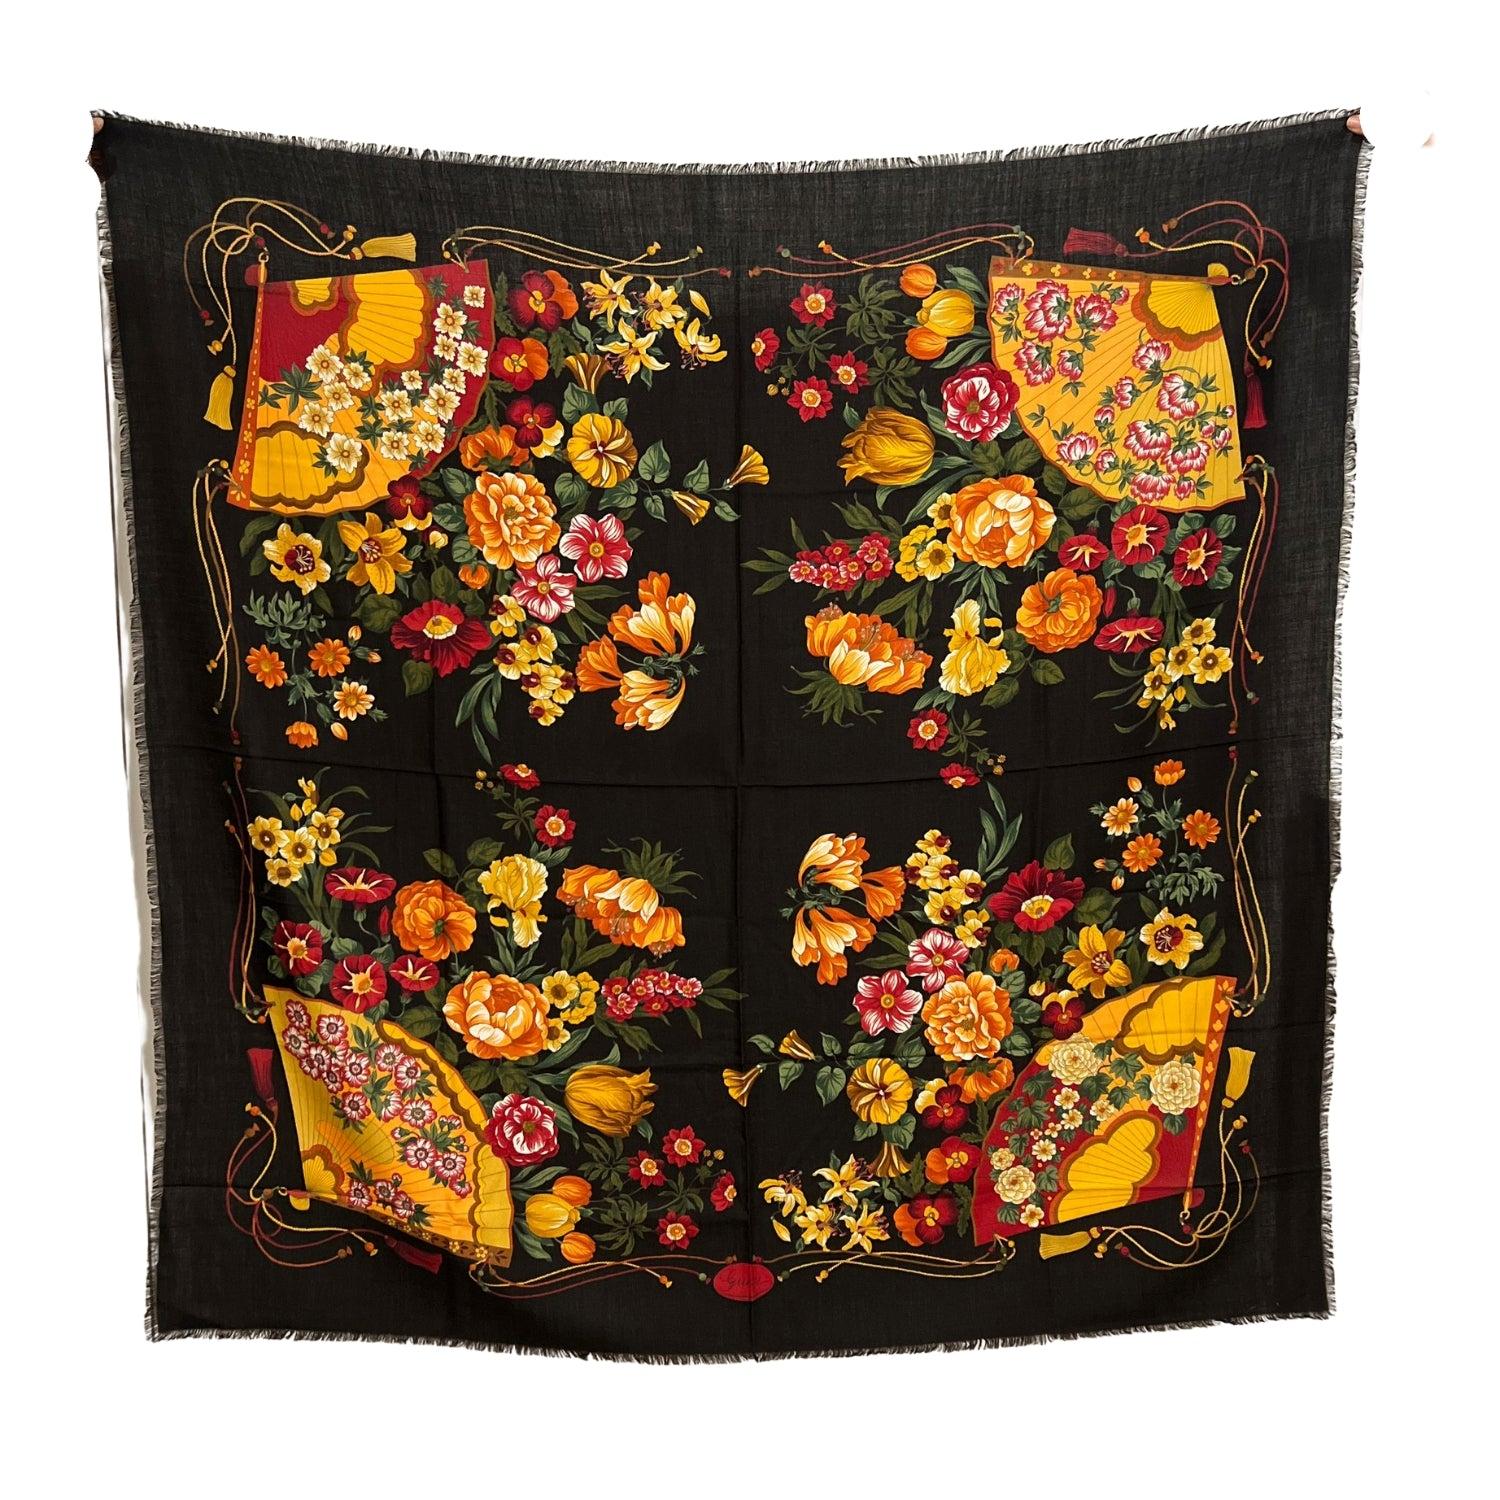 Schöner Gucci Vintage-Maxi-Schal aus den 1980er Jahren. Zusammensetzung: 70% Wolle, 30% Seide. Florales Design, mit Fächern. Schwarzer Hintergrund. Das Etikett für die Zusammensetzung ist noch angebracht. Abmessungen: 54 x 54 Zoll - 137.2x 137.2 cm